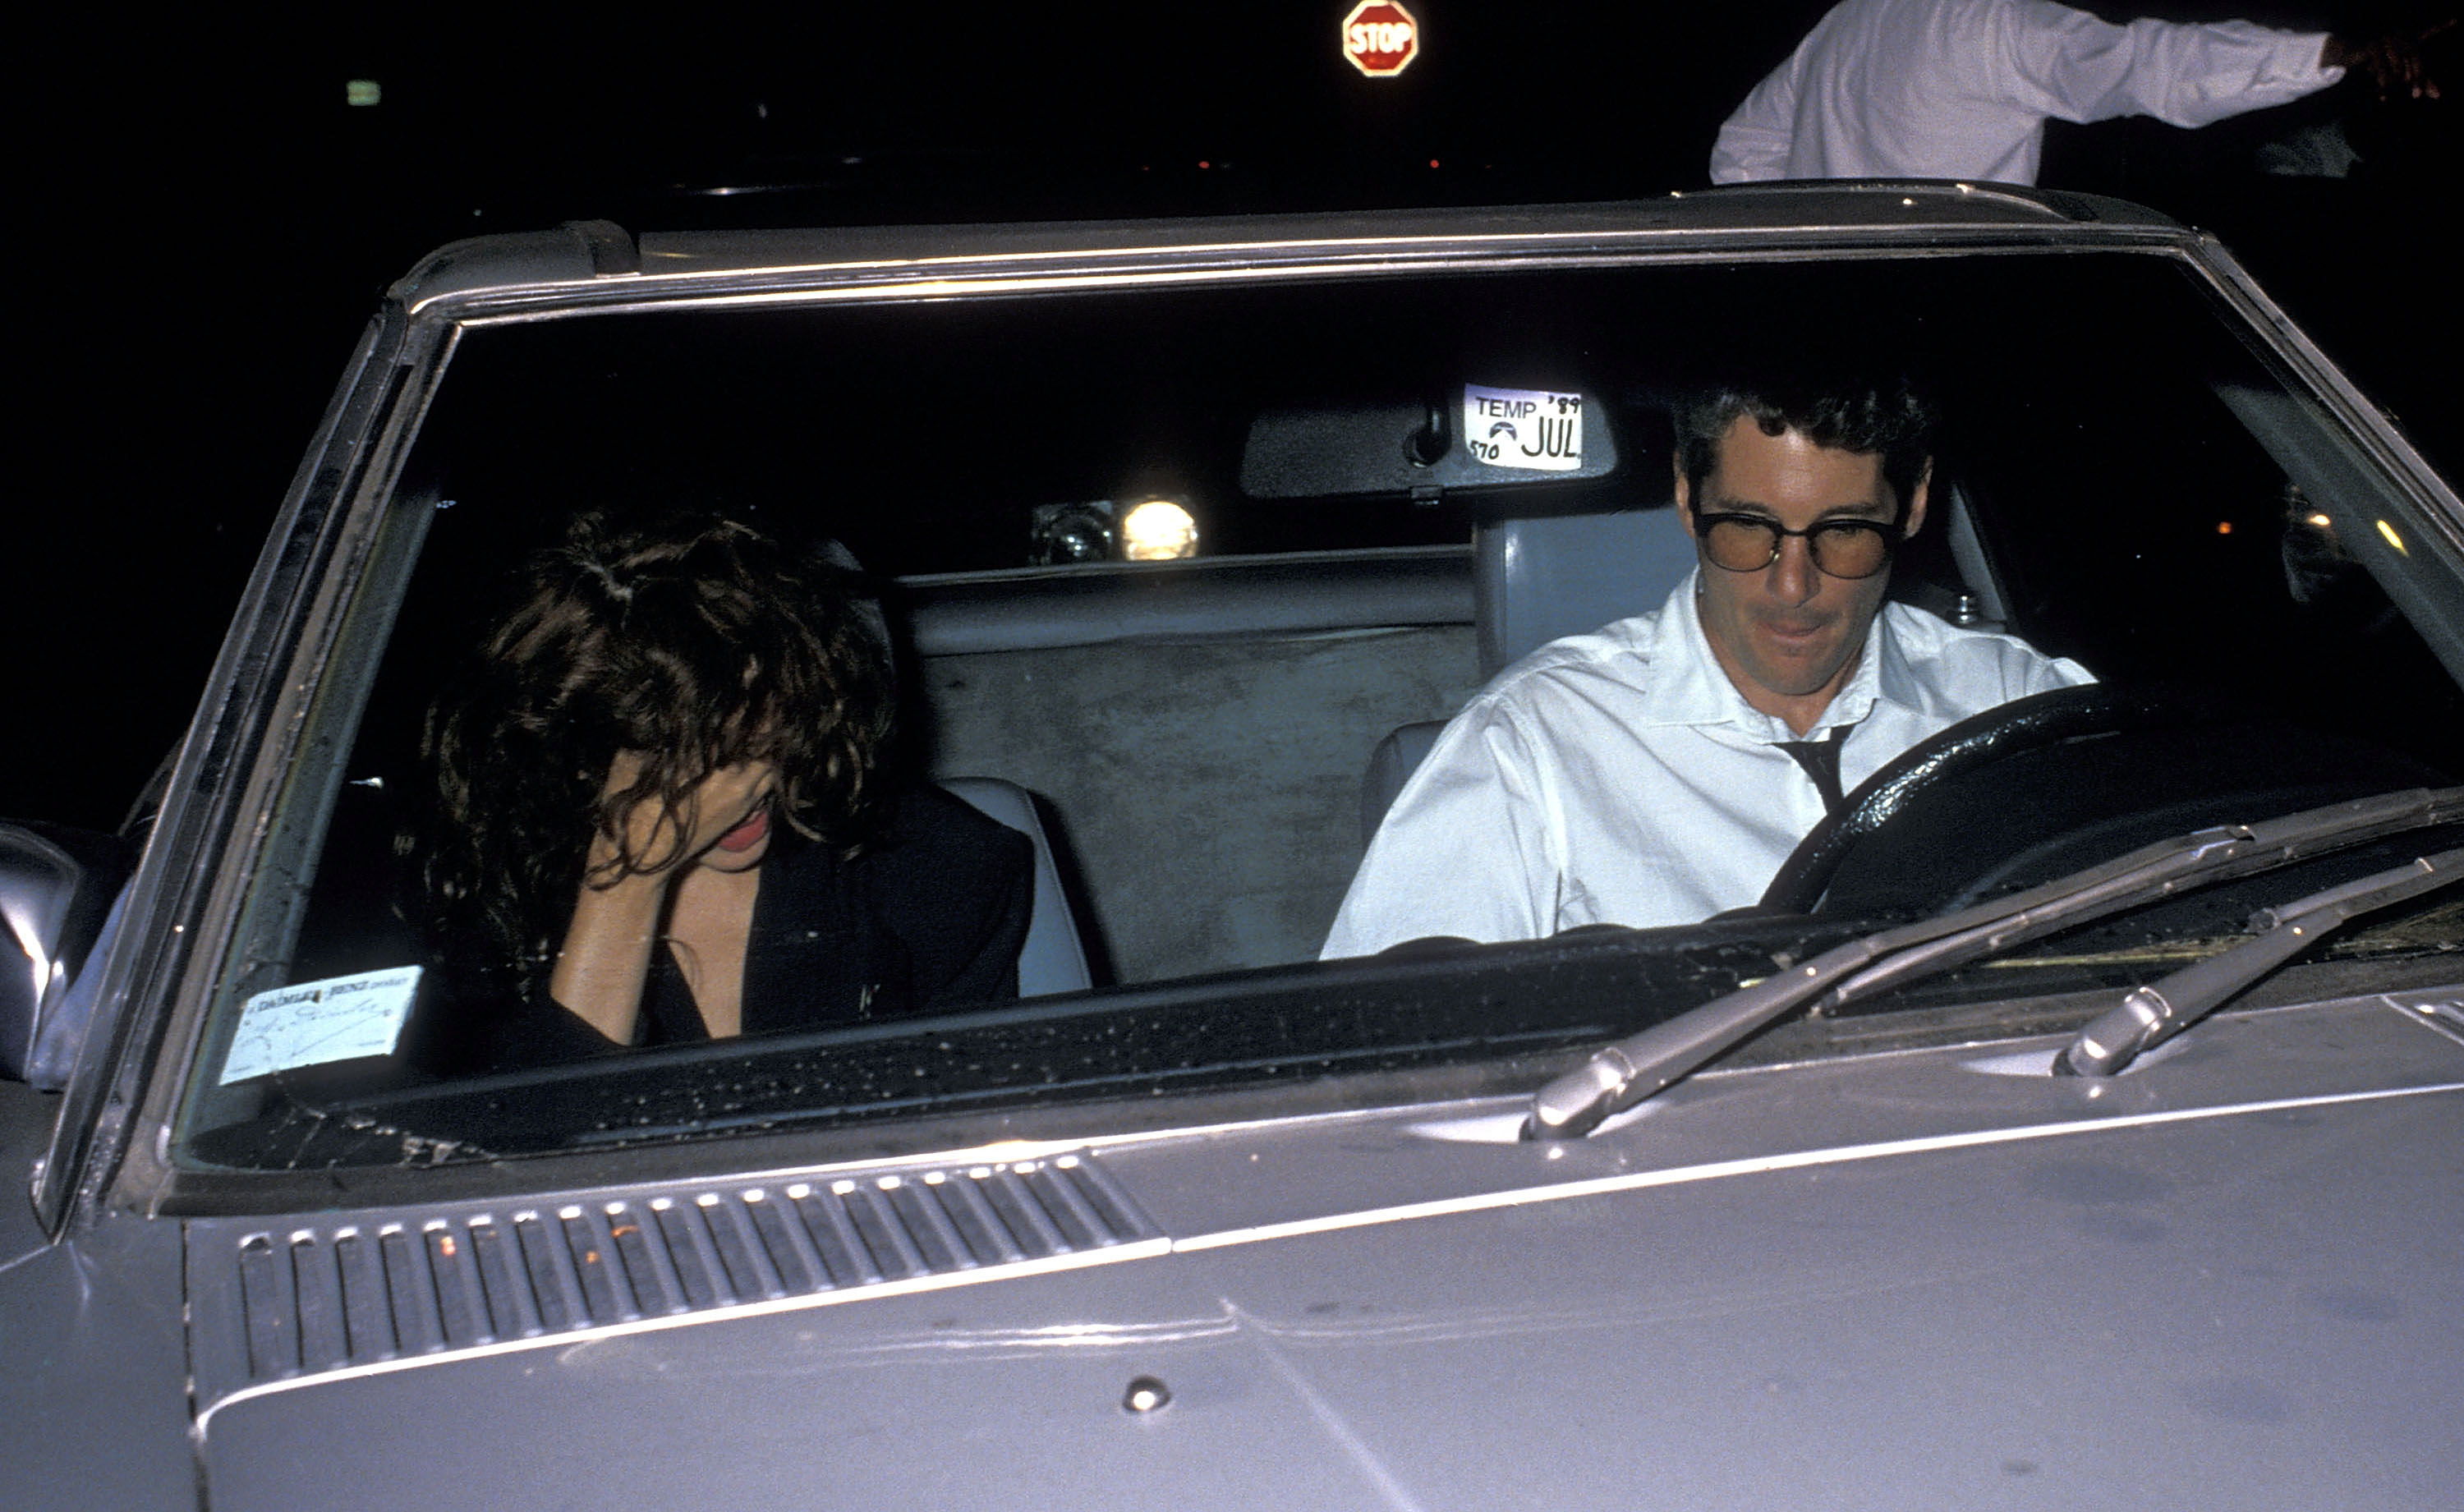 La actriz Julia Roberts y el actor Richard Gere asisten a la fiesta de cumpleaños de Herb Ritts el 12 de agosto de 1989 en un club privado de Hollywood, California. | Foto: Getty Images